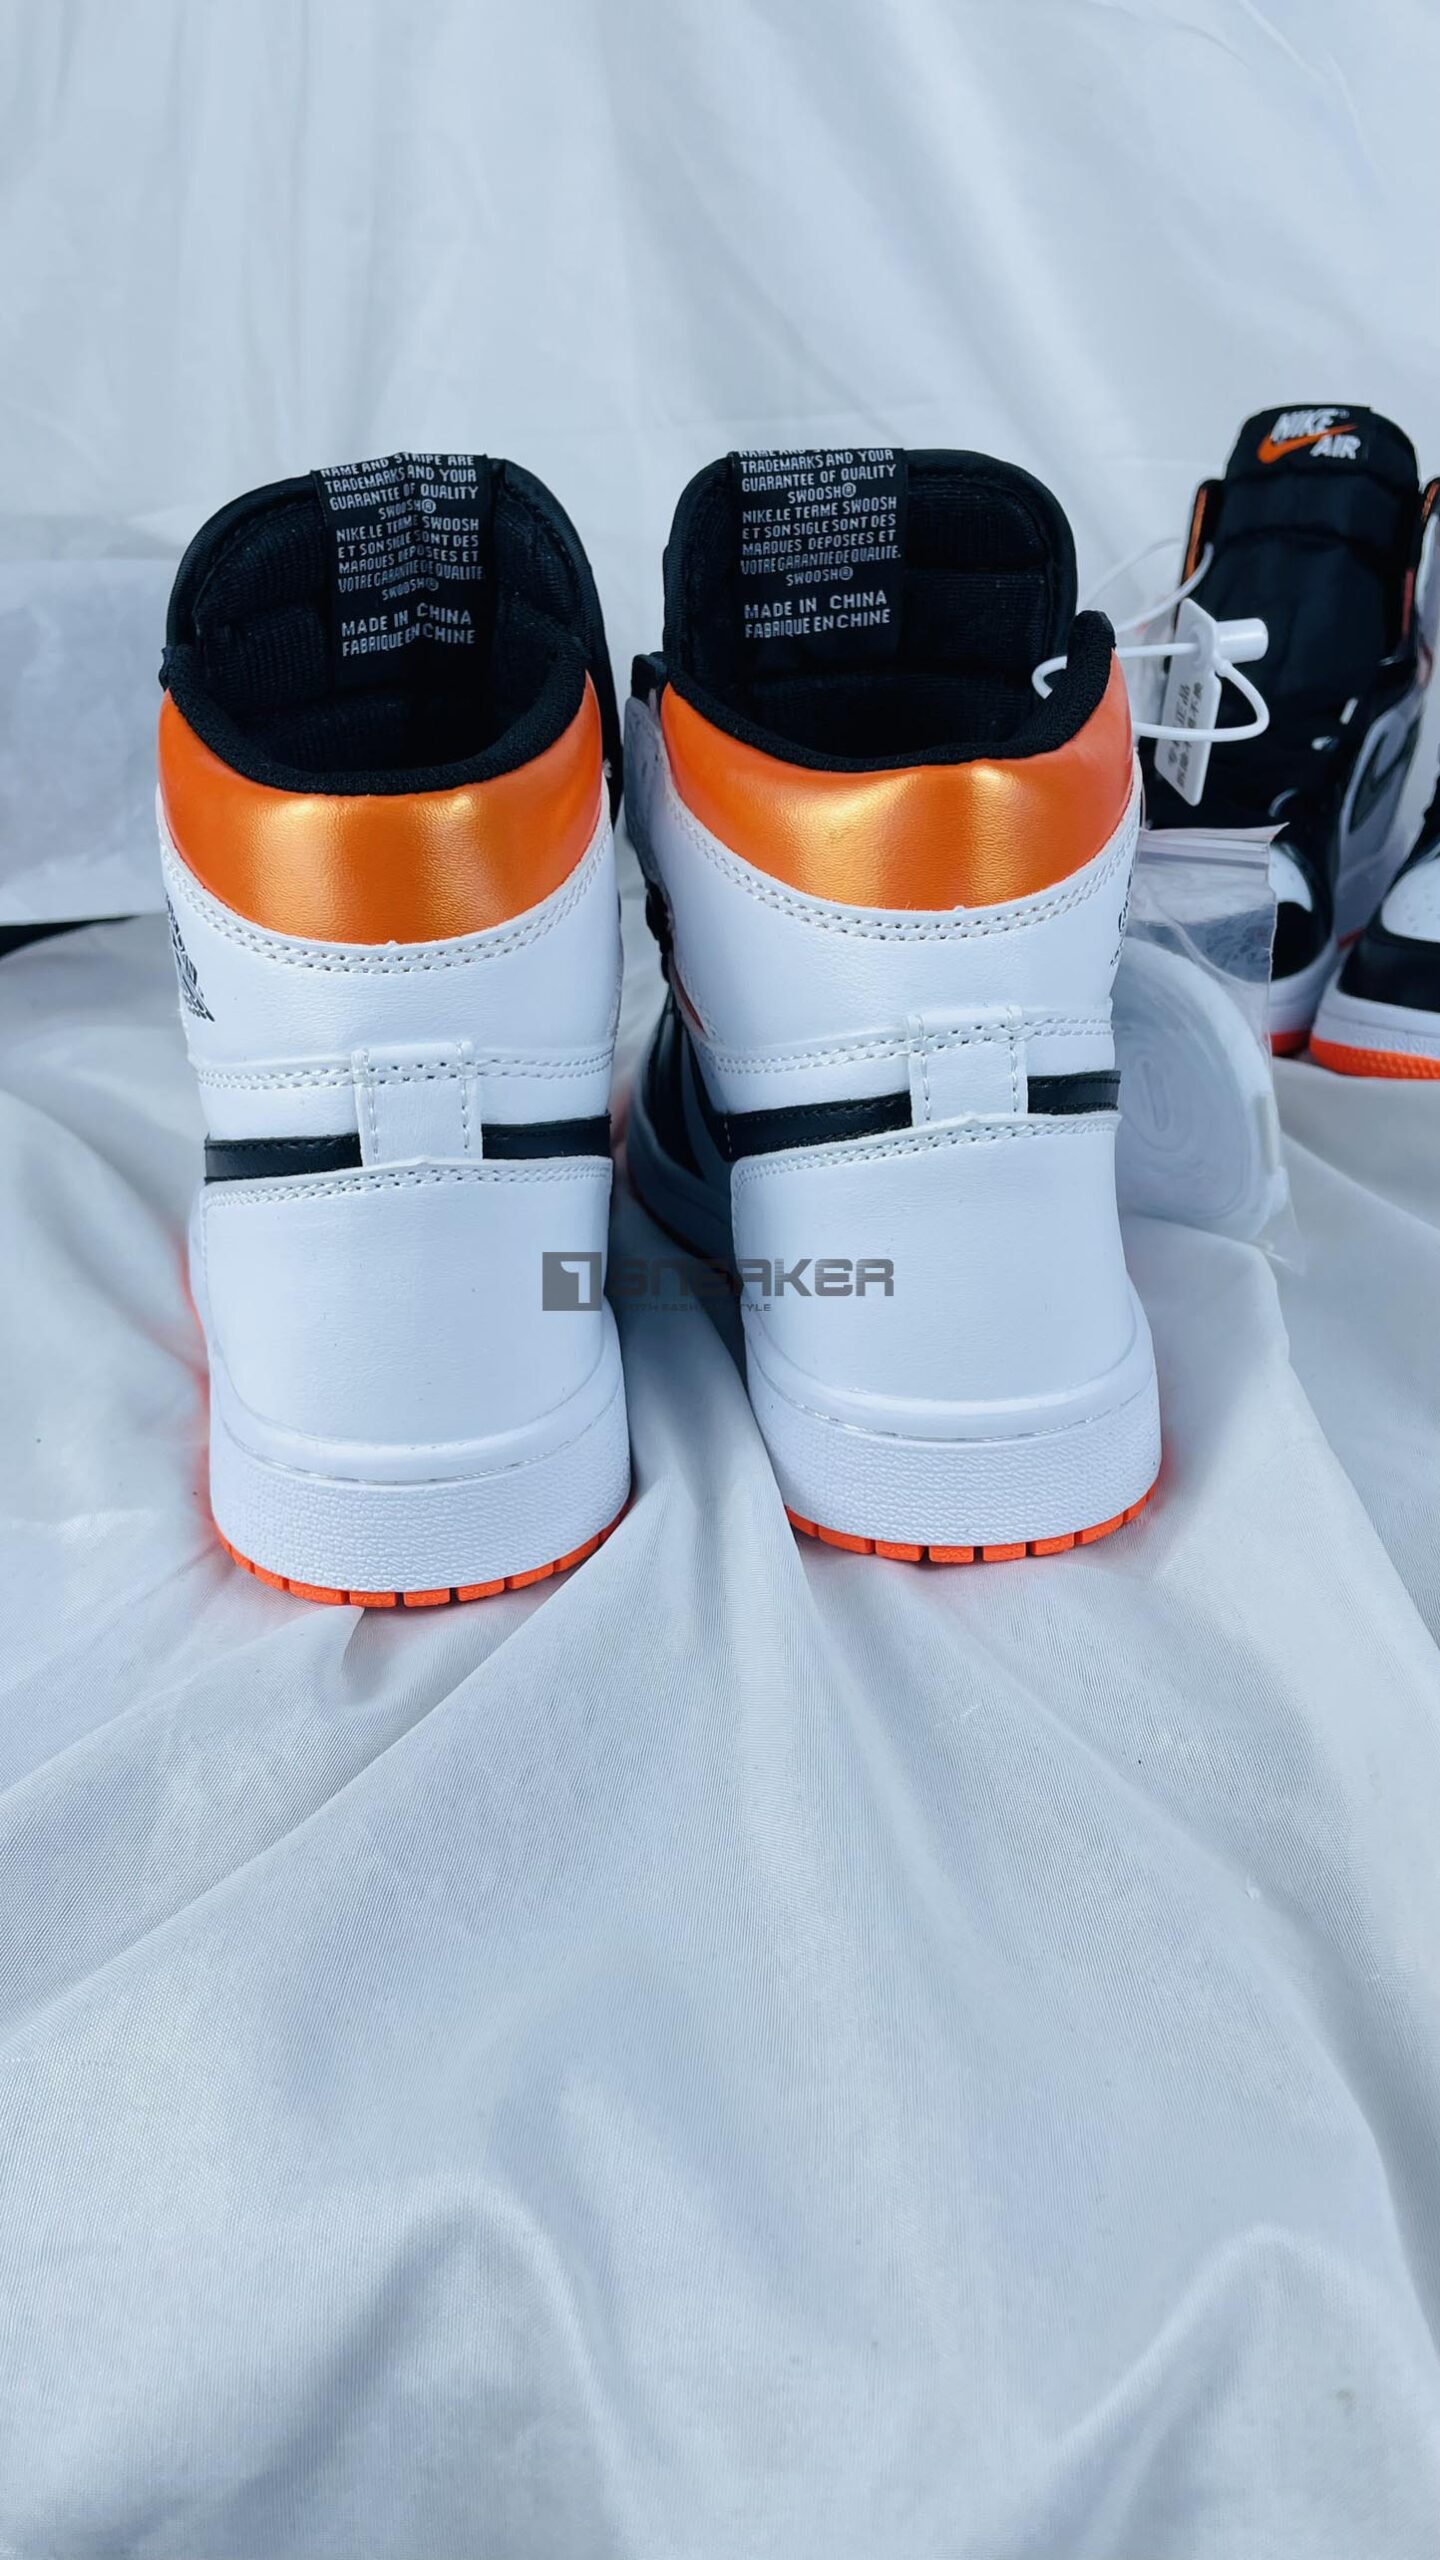 Giày Nike Air Jordan 1 Retro High OG Electro Orange chất lượng xịn xò